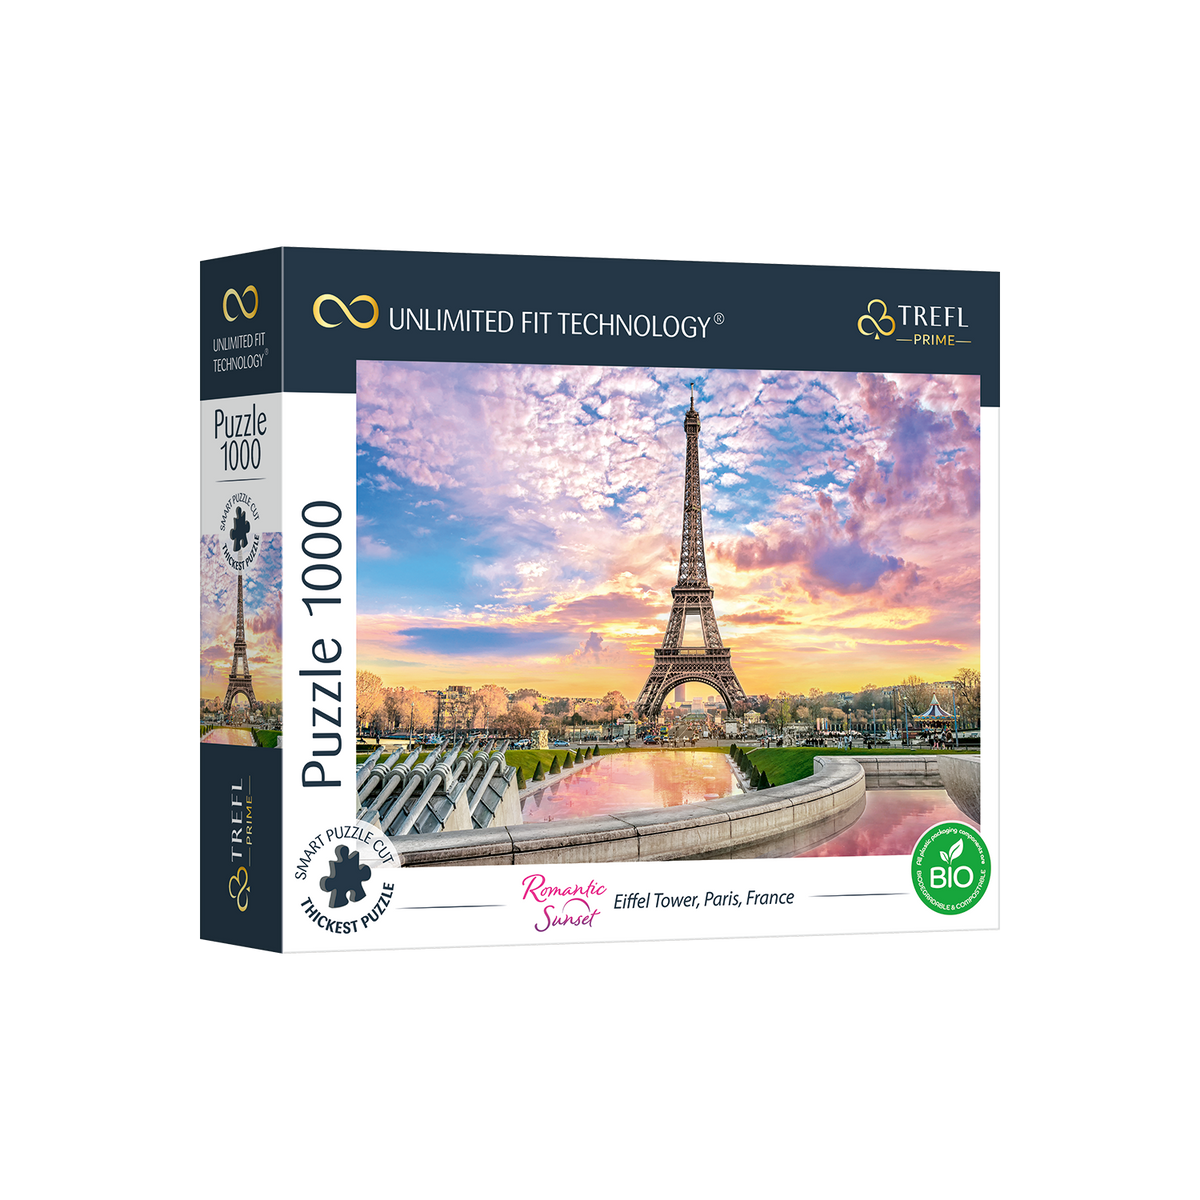 Puzzle 1000 Pièces - King - Paris France Tour Eiffel Tower